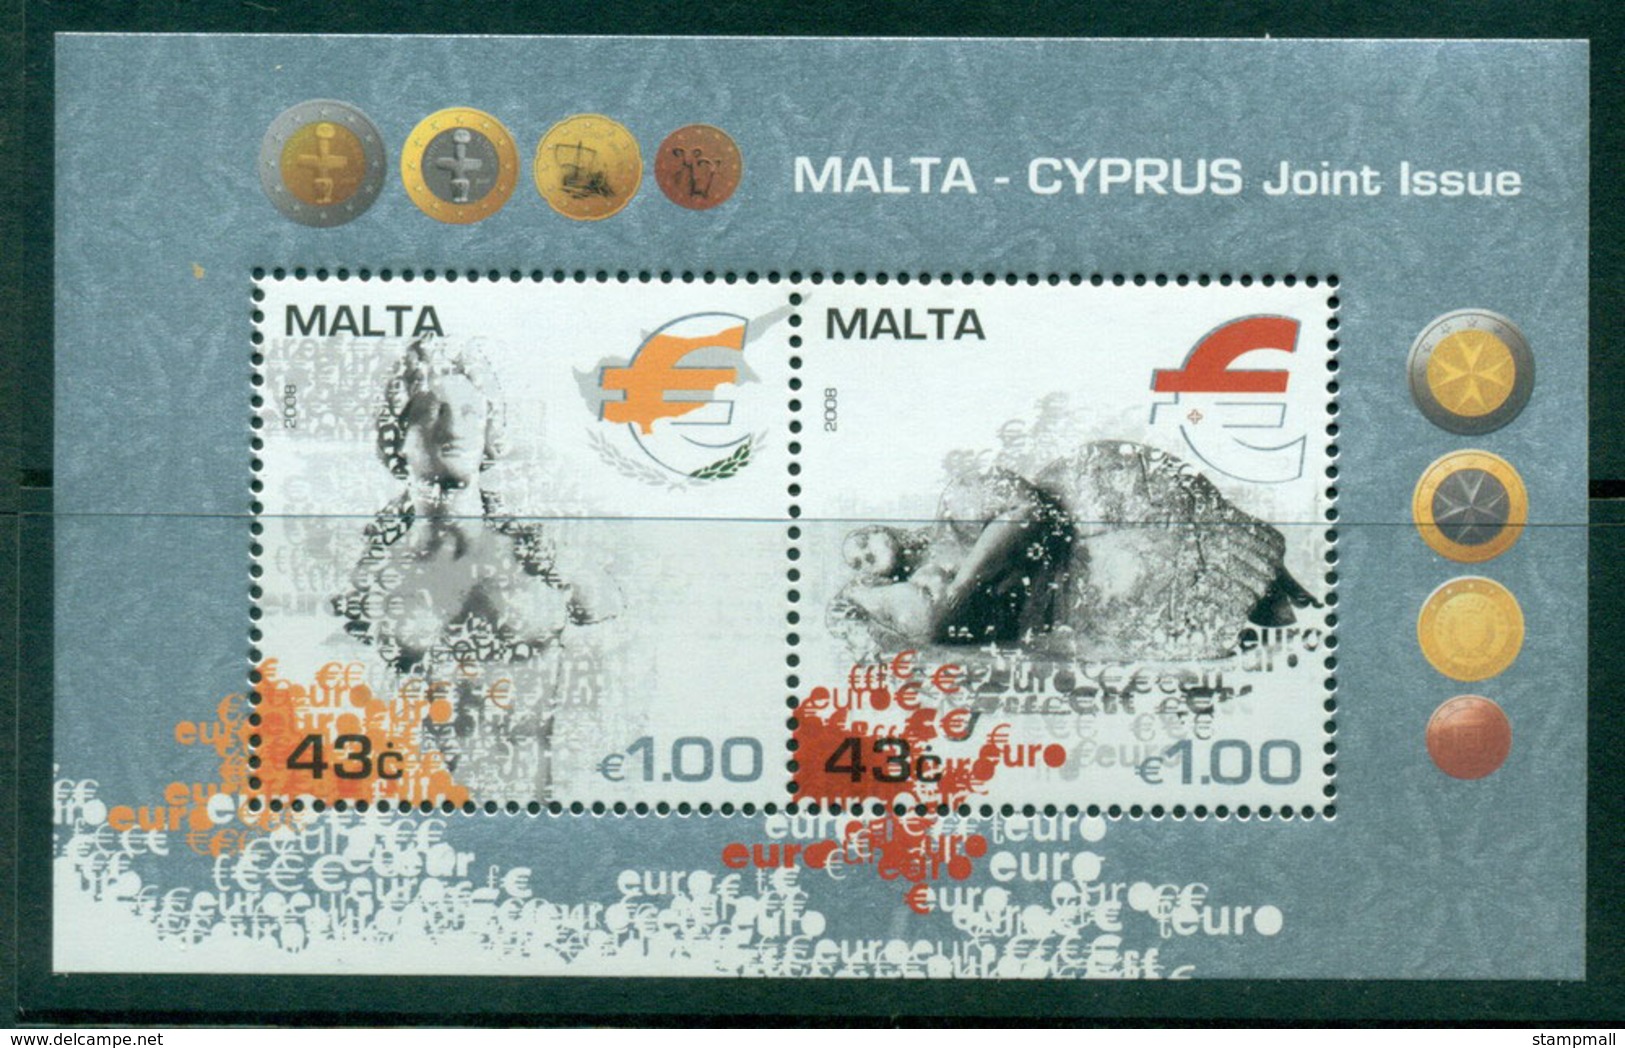 Malta 2008 Malta-Cyprus Joint Issue MS MUH Lot23579 - Malta